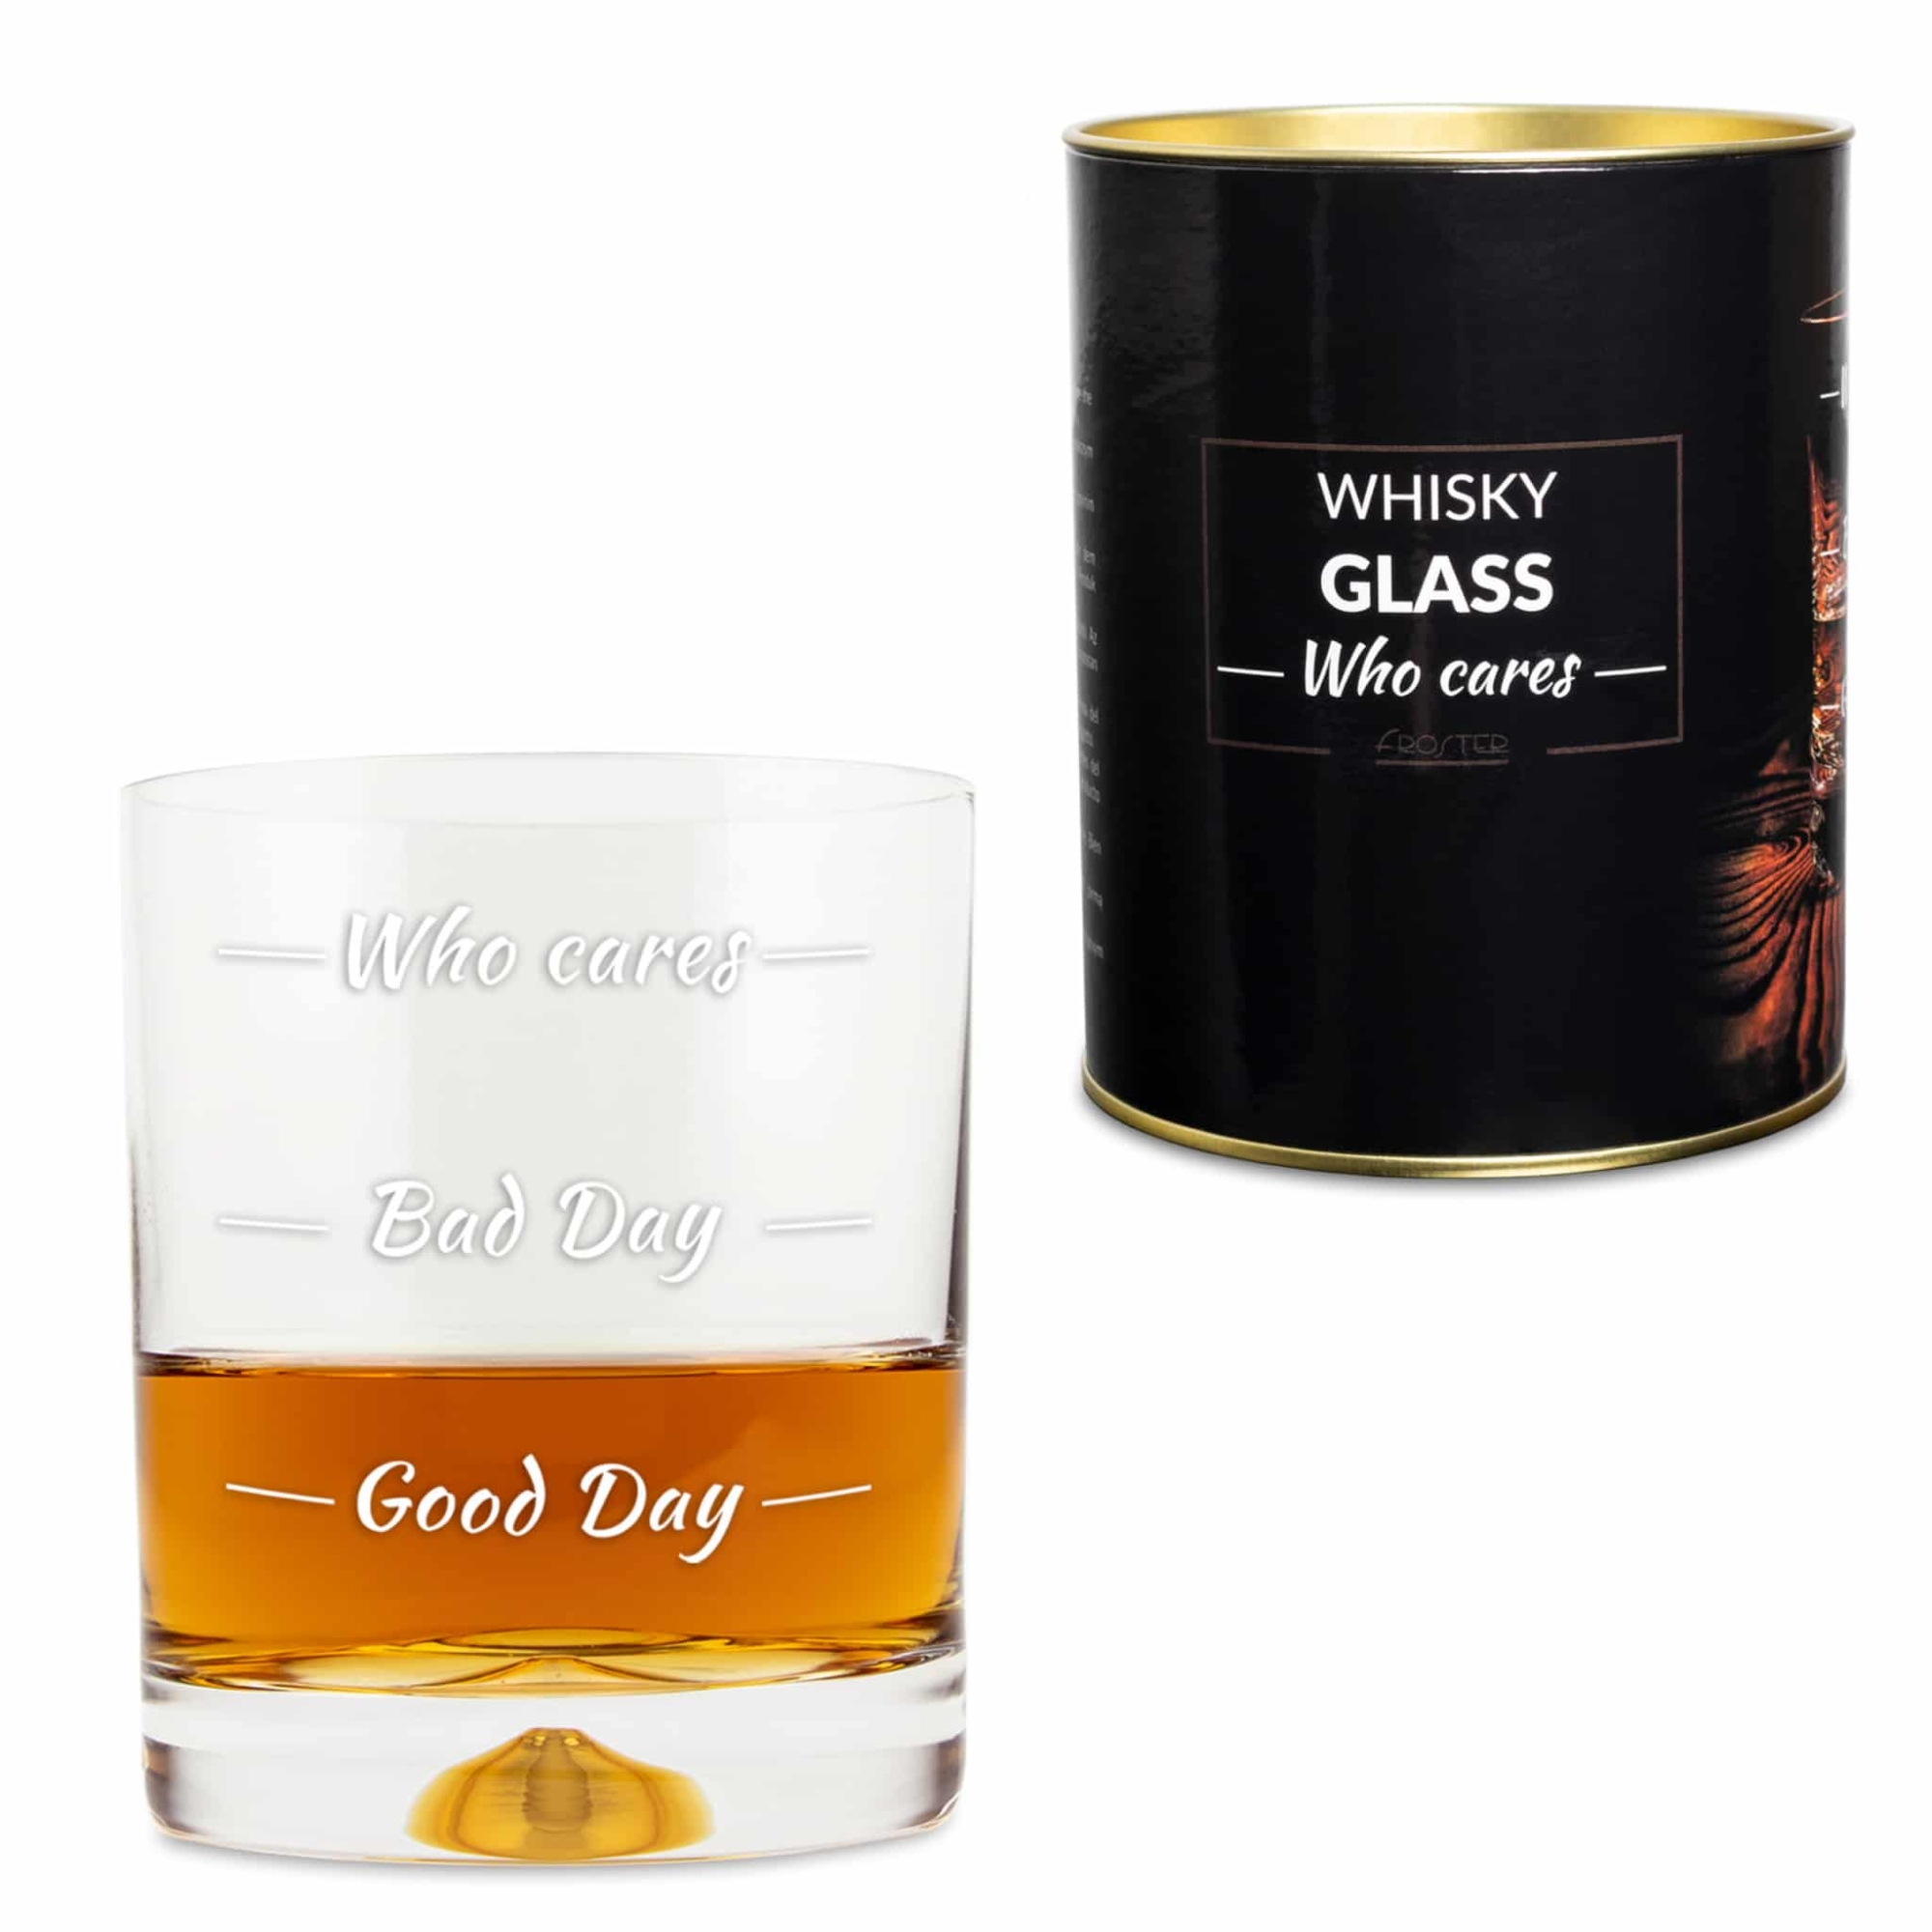 Szklanka do whisky “Who cares” Prezenty Szalony.pl - Sklep imprezowy 2